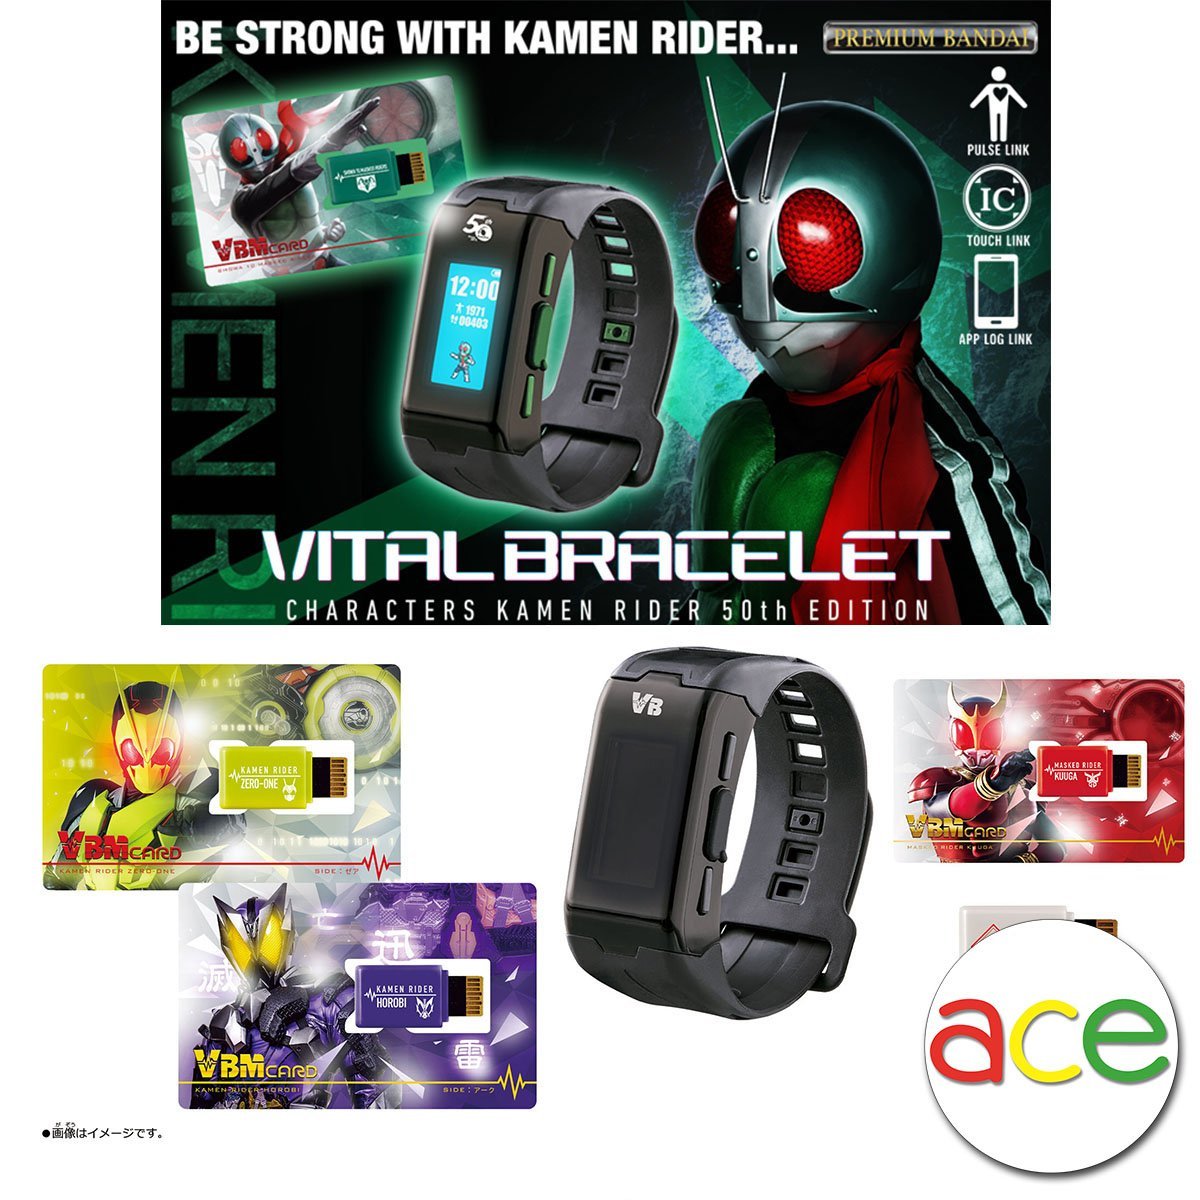 Kamen Rider 50th Anniversary [Vital Bracelet Characters Showa 10 Masked Riders PBandai / Kuuga / VBM Card Set Vol 1]-VB Set 50th Edition-Bandai-Ace Cards &amp; Collectibles